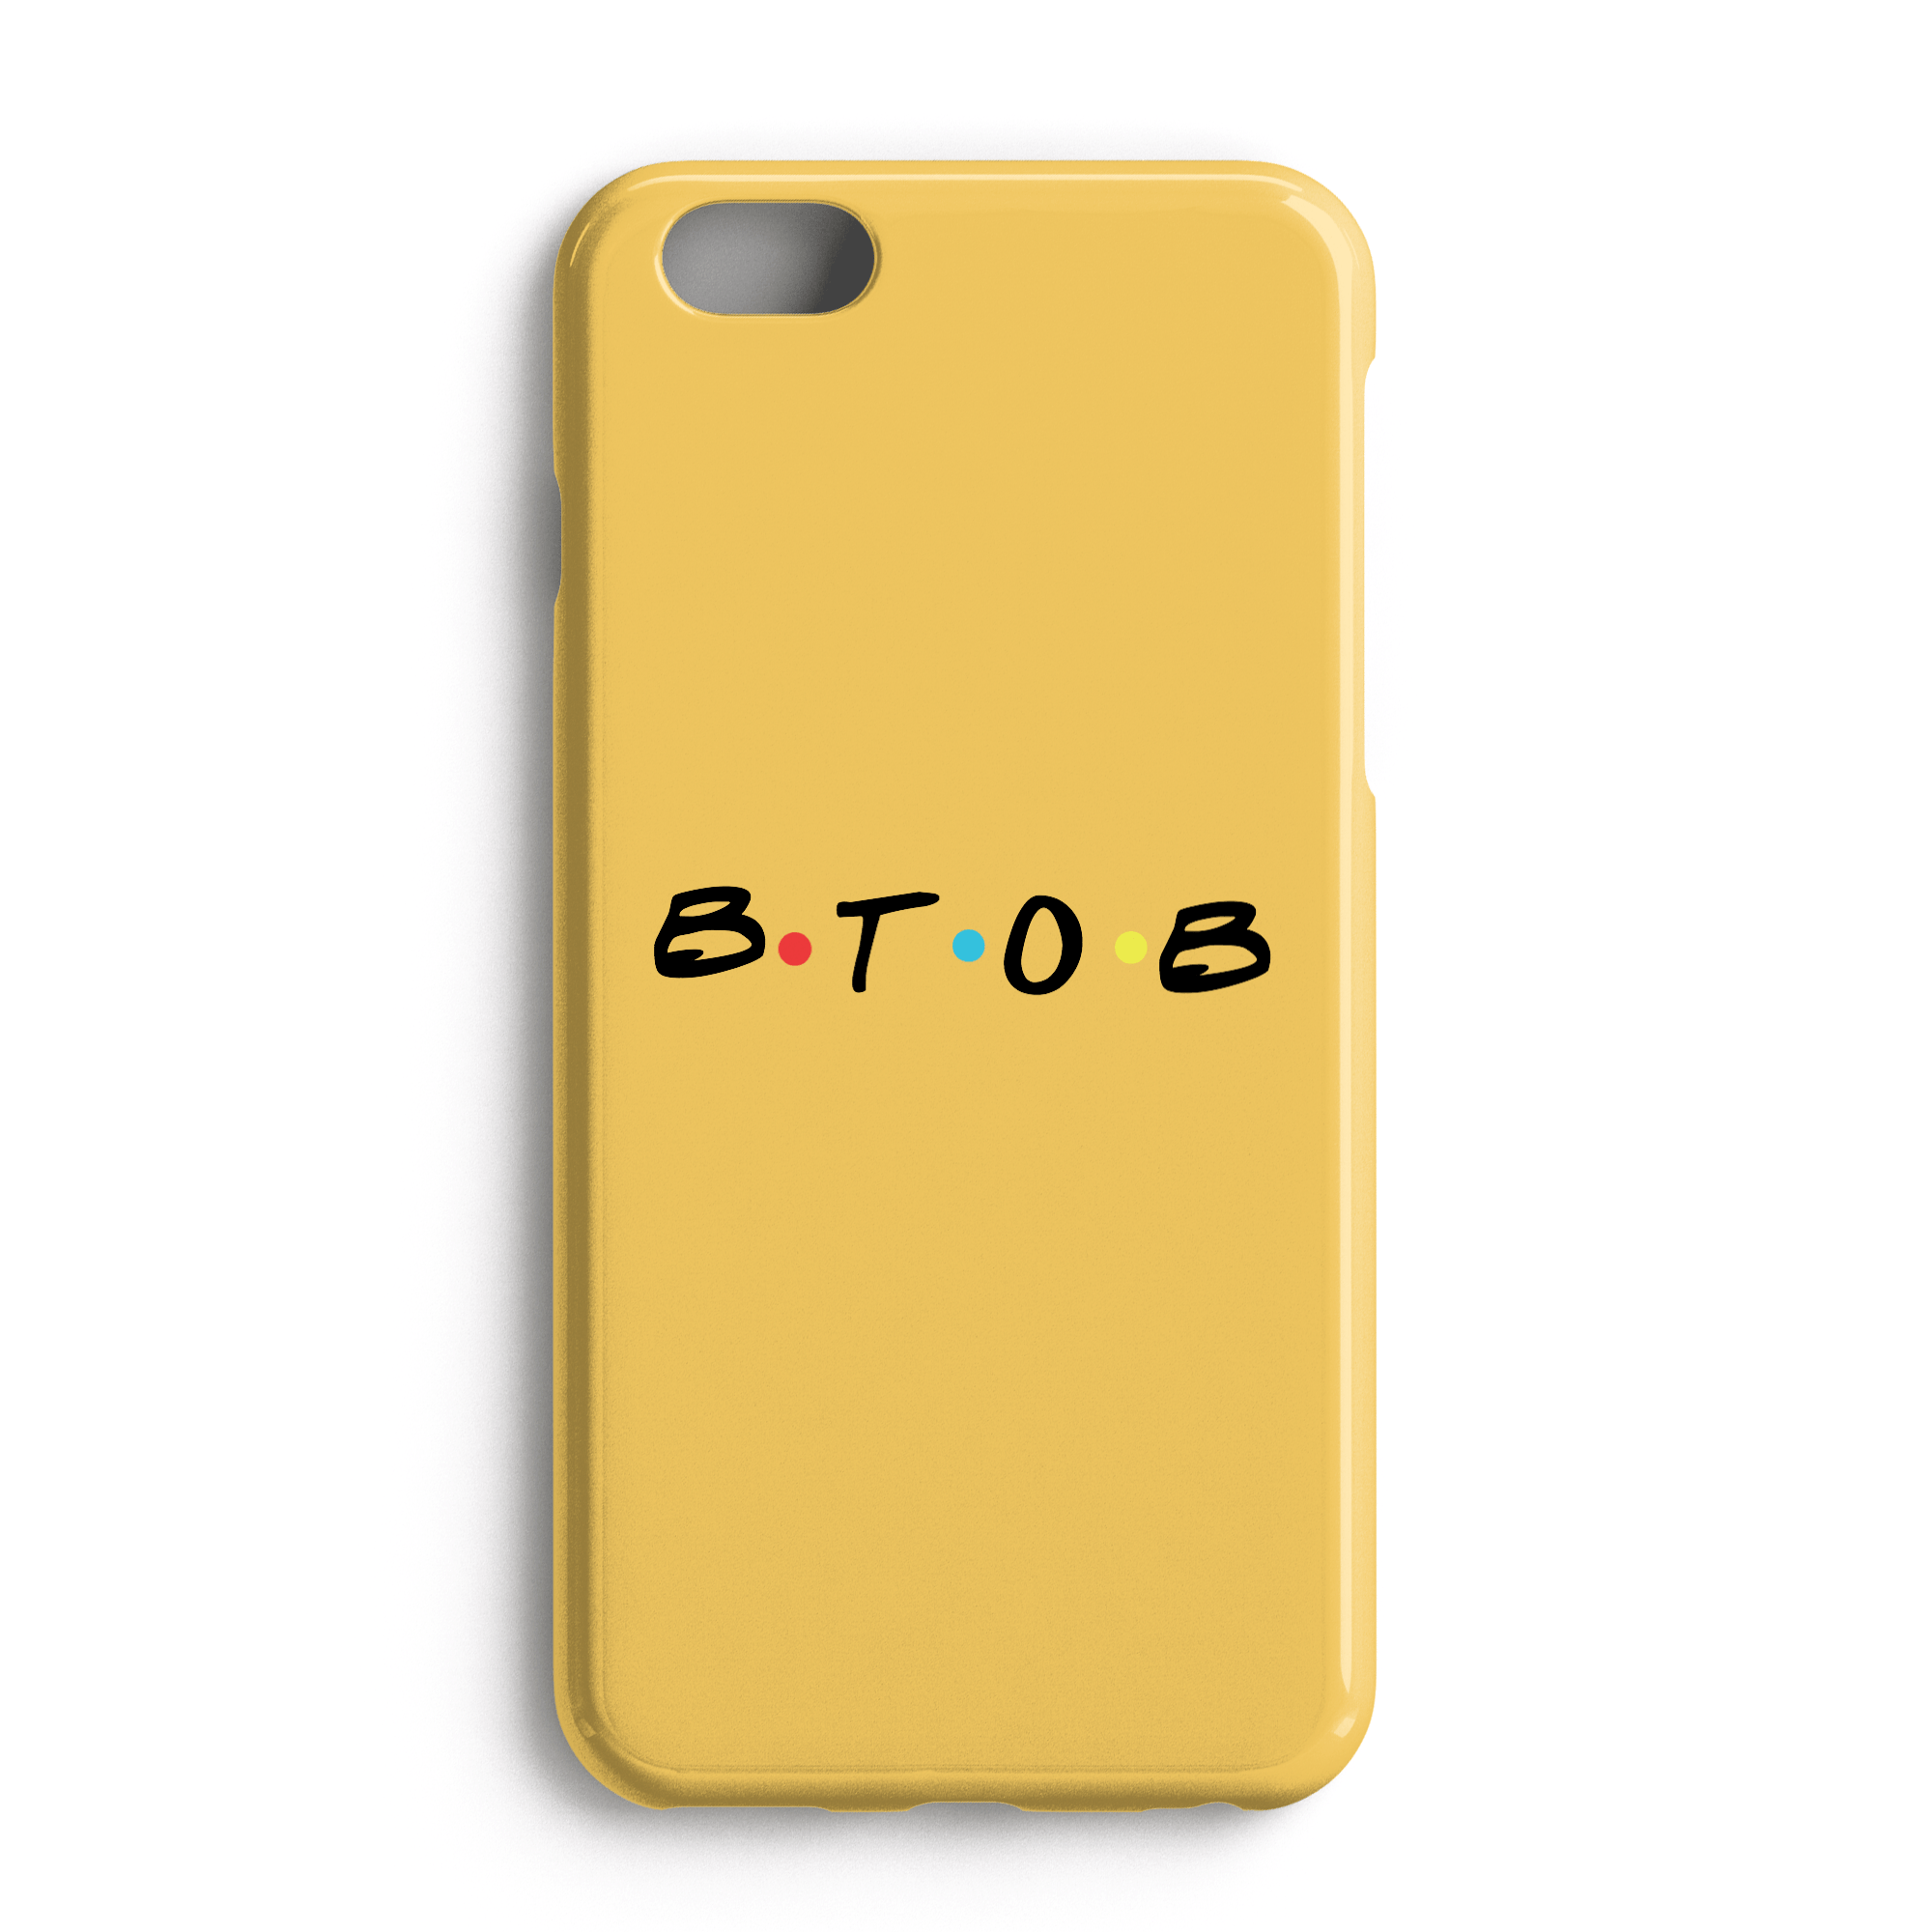 Btob Logo - BTOB FRIENDS SHOW INSPIRED LOGO